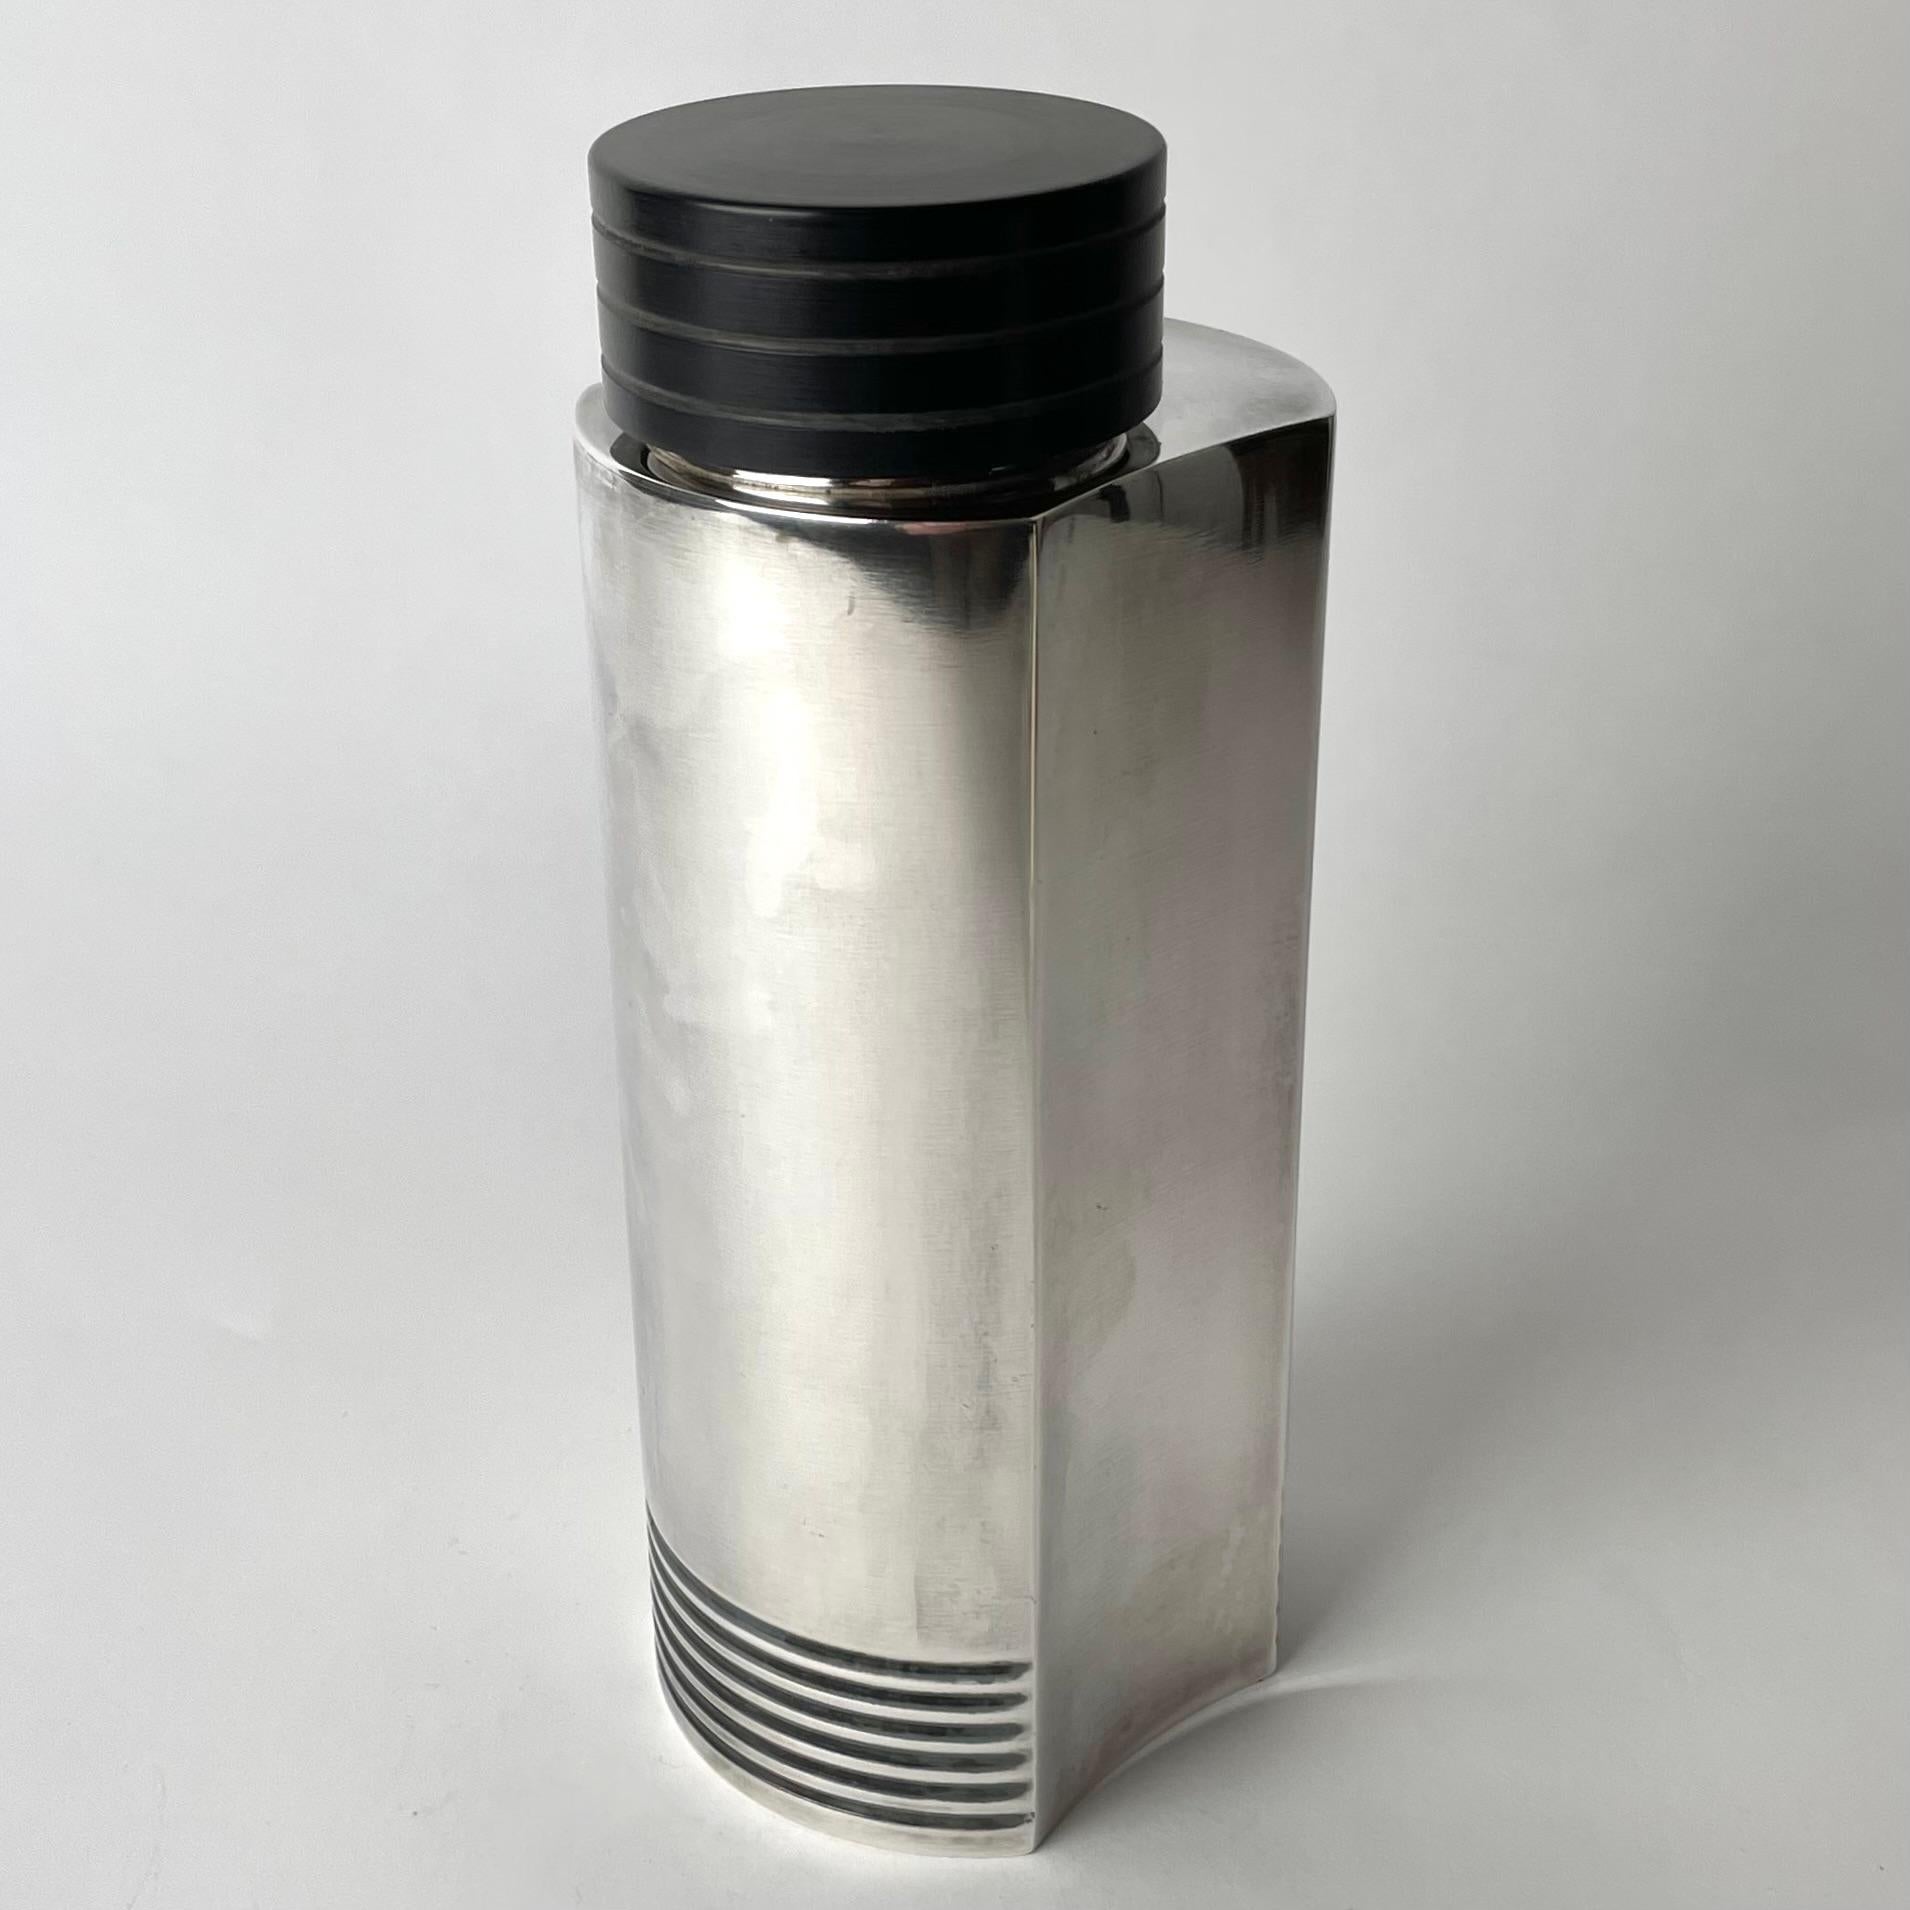 Sehr eleganter Art-Déco-Cocktail-Shaker, entworfen von dem berühmten Designer Folke Arström im Jahr 1935 für GAB (Guldsmedsbolaget) in Schweden. Der Shaker ist versilbert und mit Details aus Bakelit versehen. Zeitgenössisches